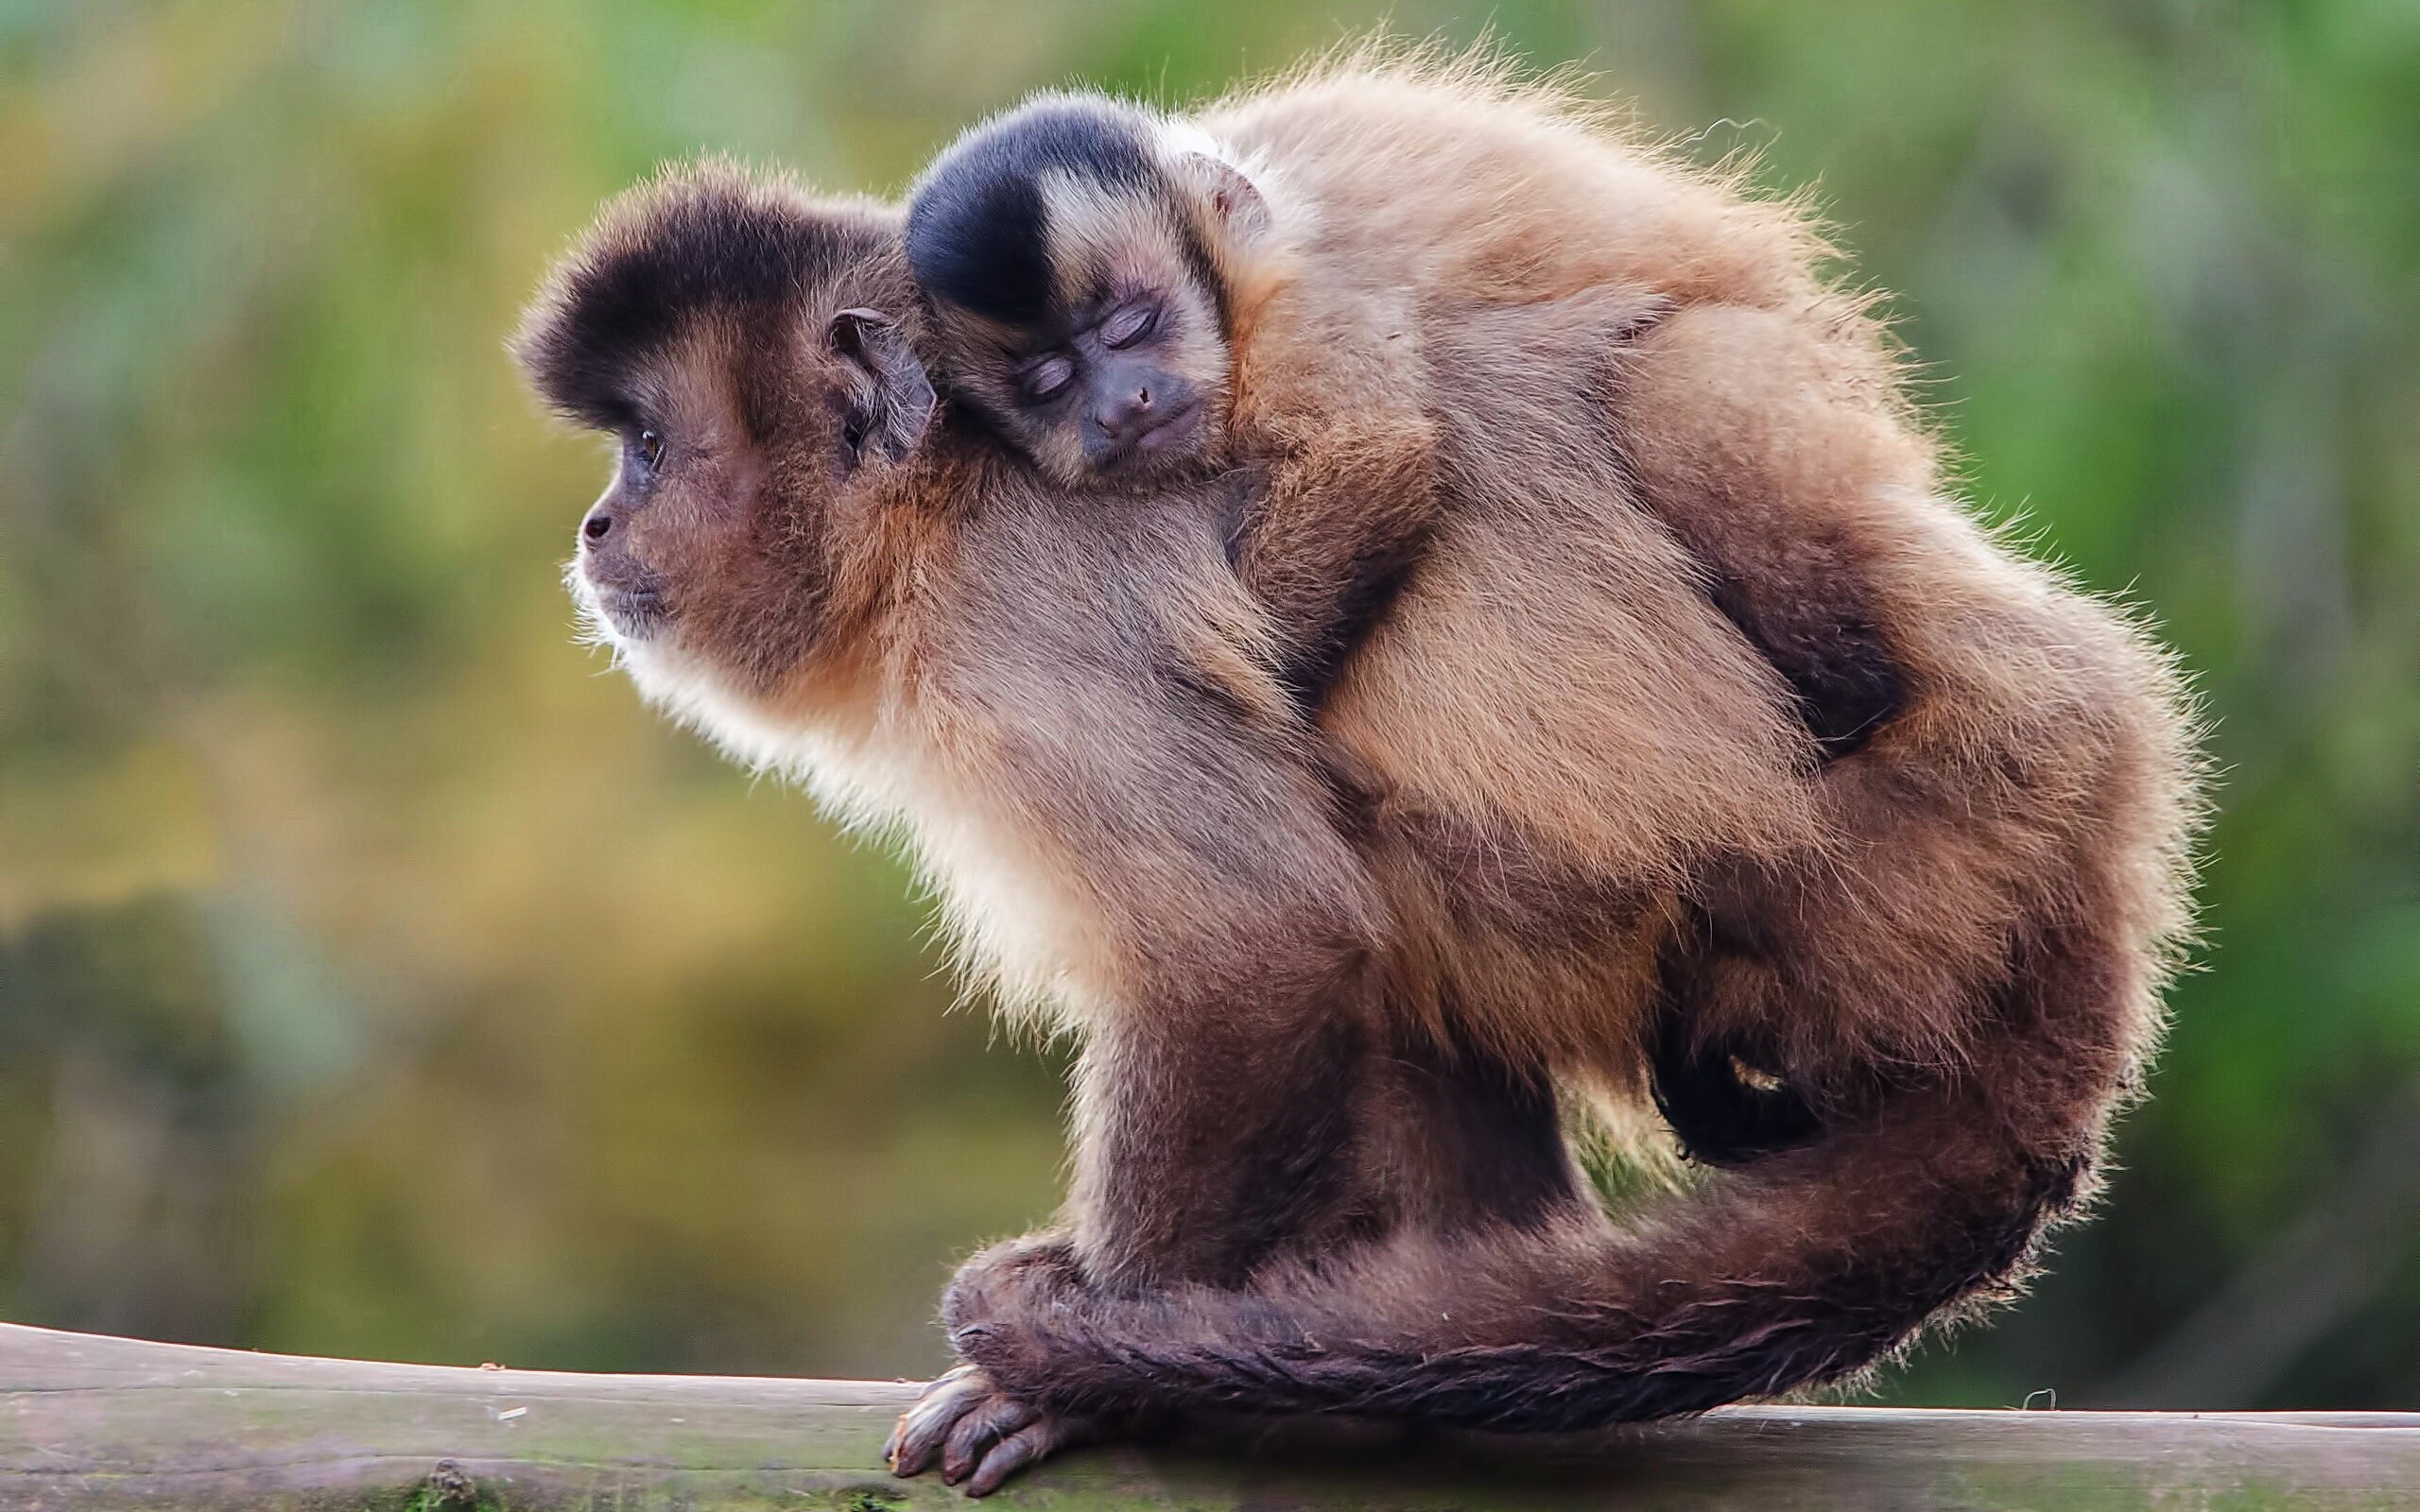 capuchin monkey smile